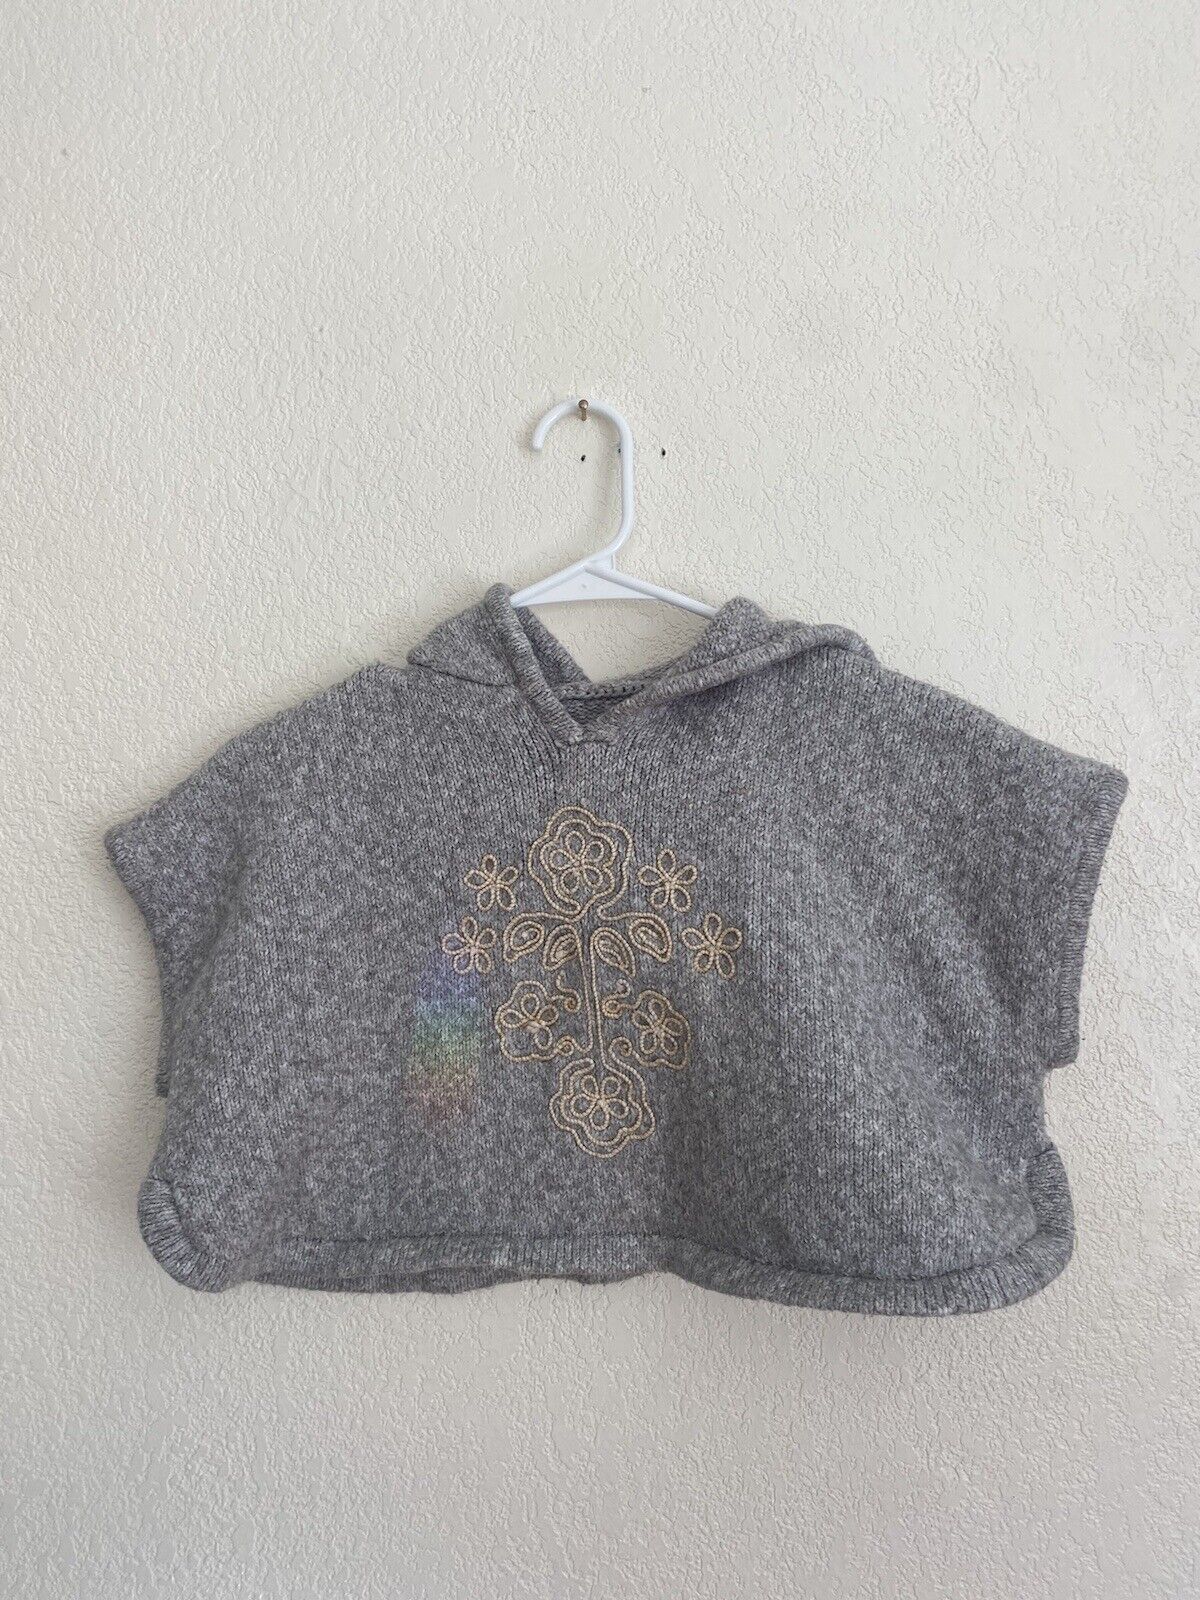 Gray Hooded Crop Sweater - Unbranded - Women’s XXS # 1979